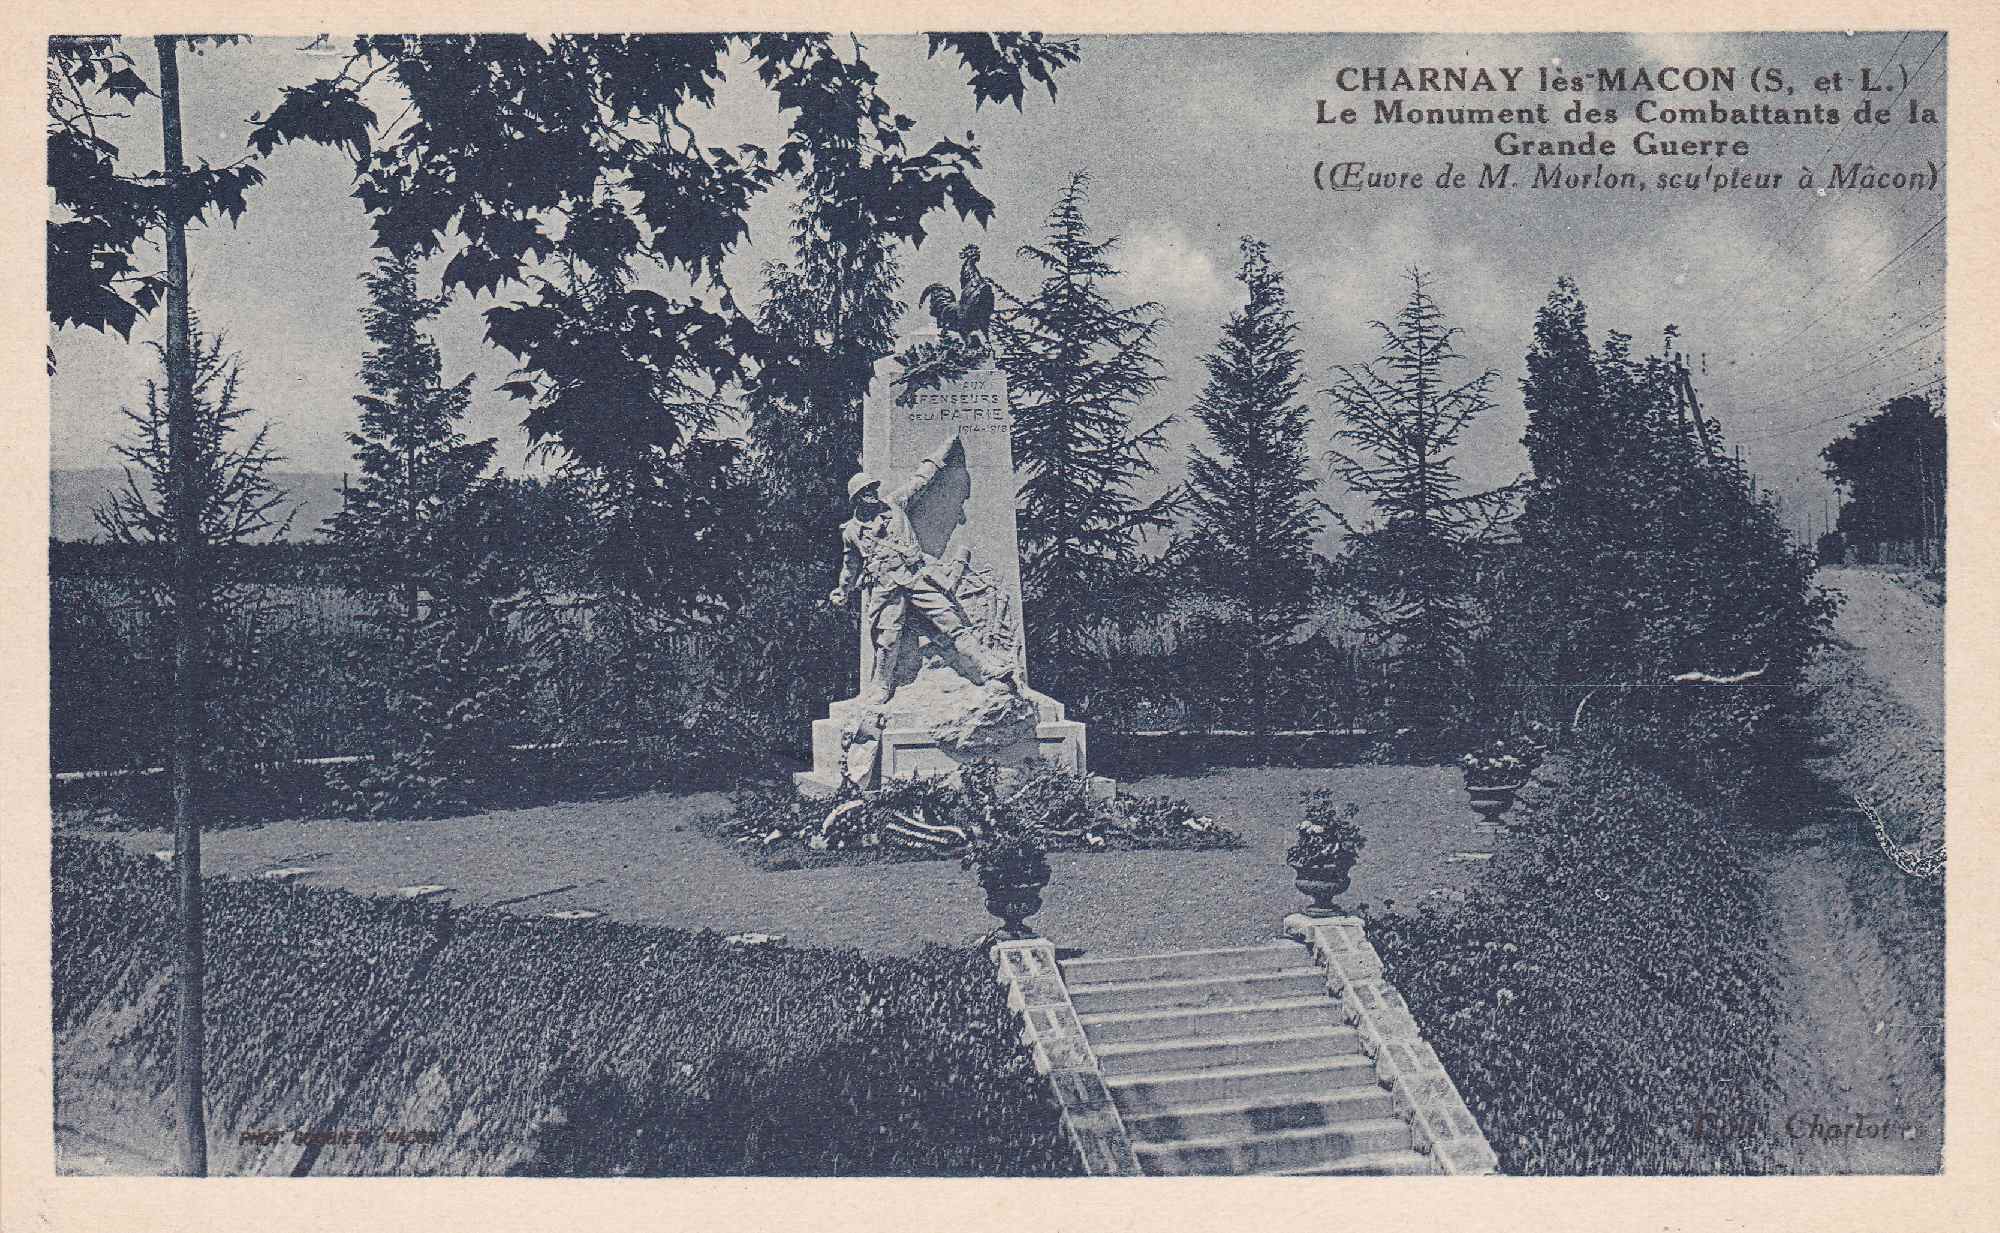 Alexandre Morlon et le monument aux morts de Charnay les Mâcon